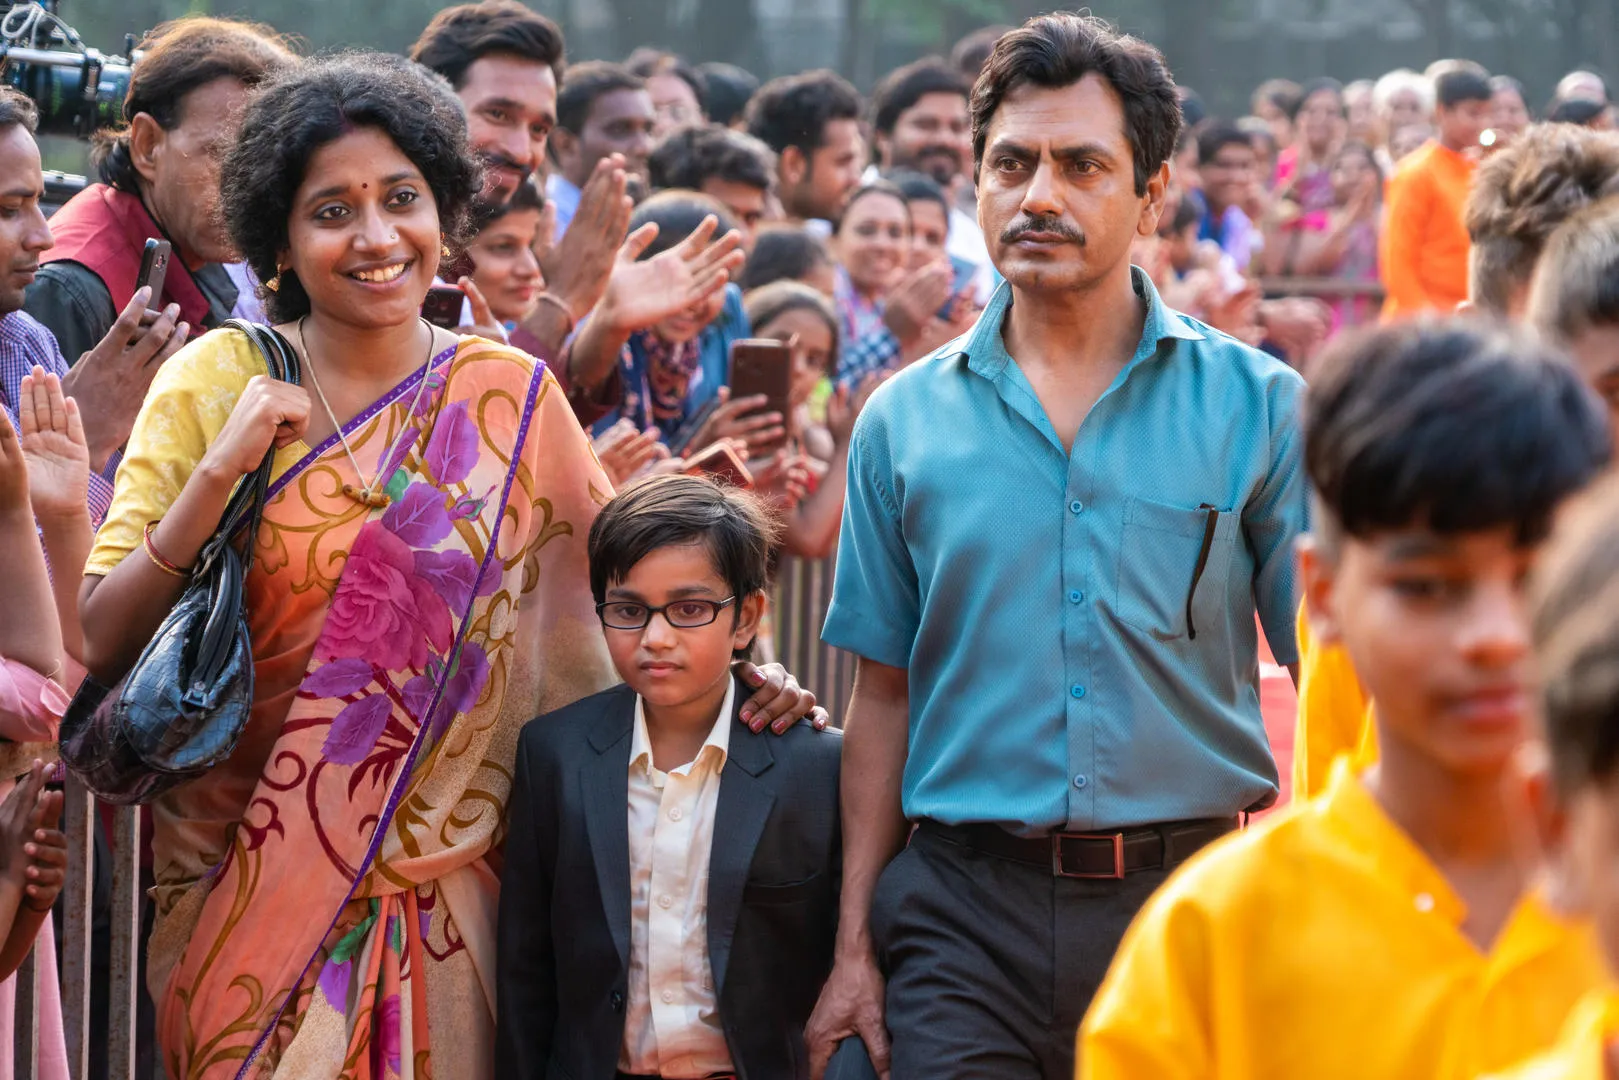 फिल्म ‘गंगूबाई काठियावाड़ी’ में अभिनय करने से संजय लीला भंसाली के साथ काम करने का मेरा सपना पूरा हुआ: इदिरा तिवारी